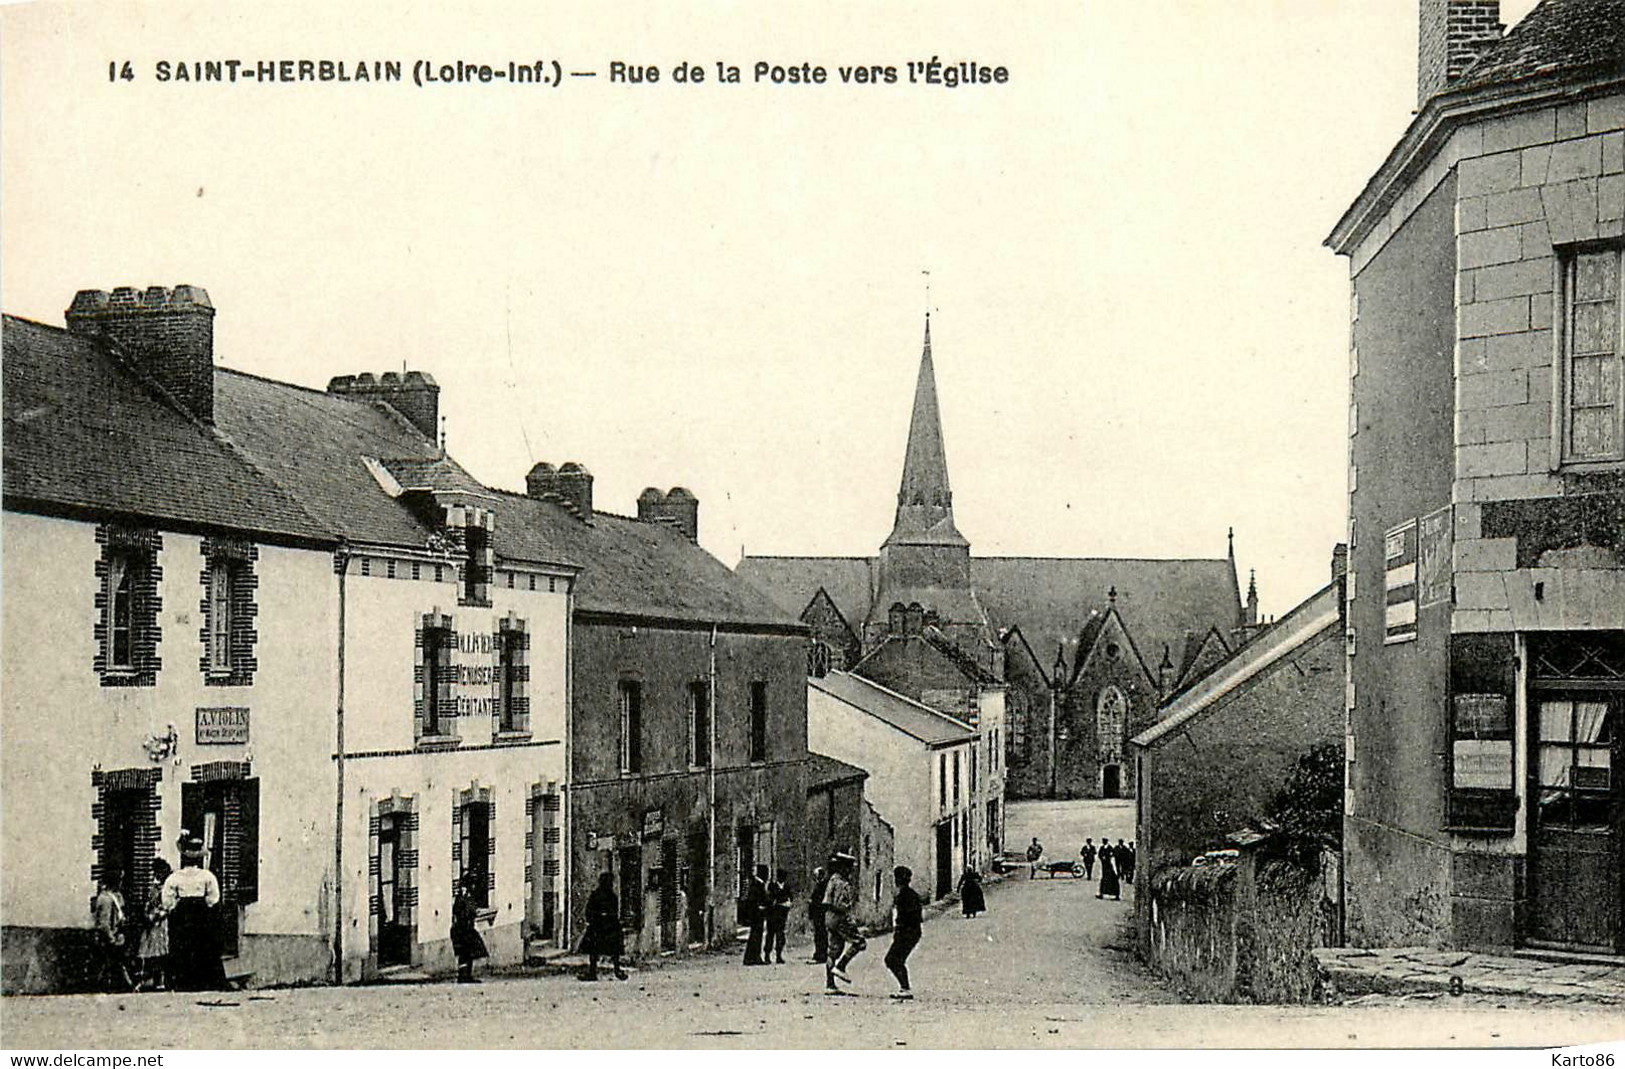 St Herblain * Rue De La Poste Vers L'église * VIOLIN Débitant * OLLIVIER Menuisier Débitant - Saint Herblain